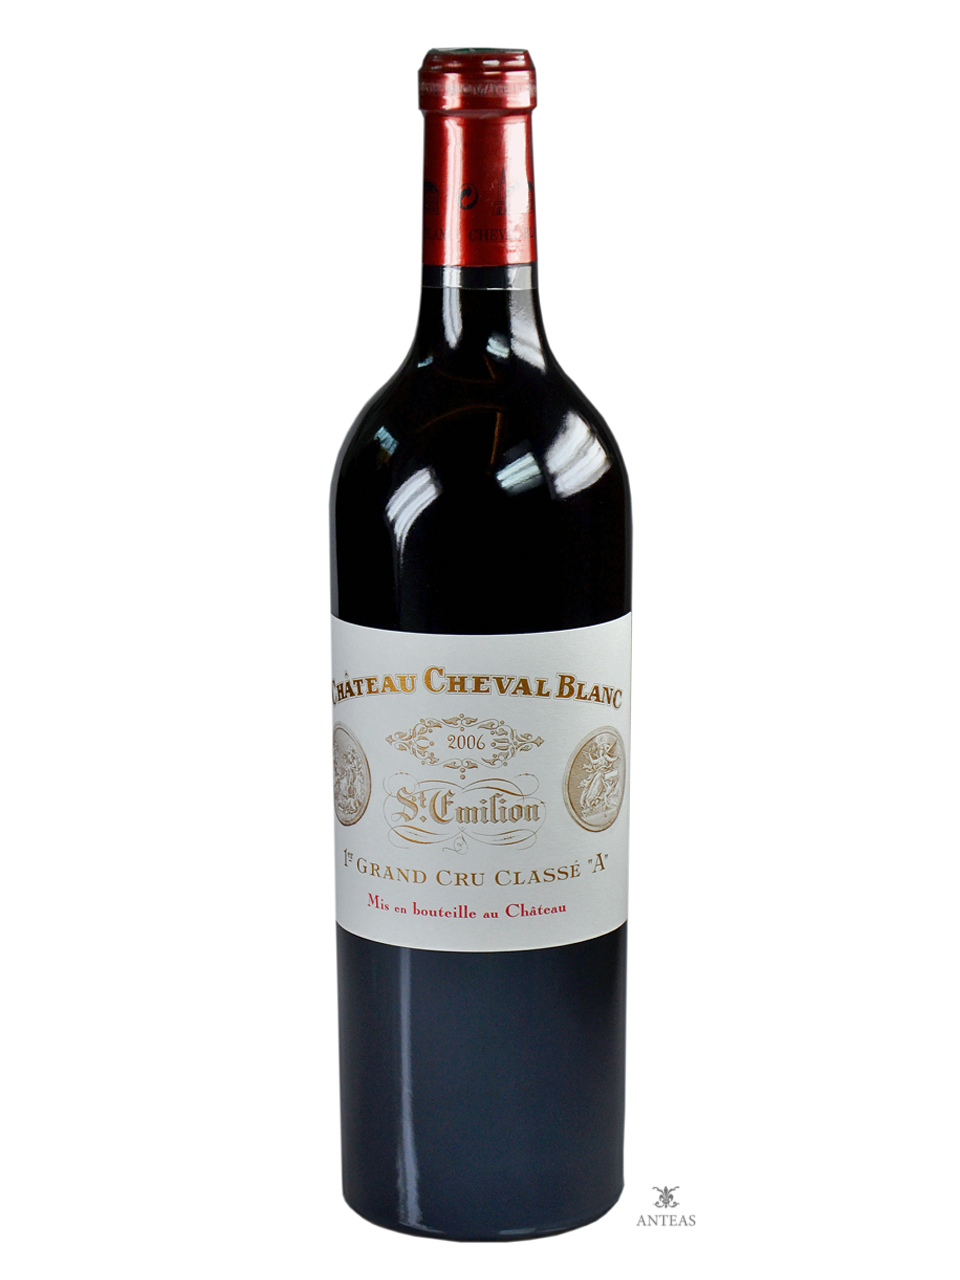 Château Cheval Blanc 2006 – 1er Grand Cru Classé A